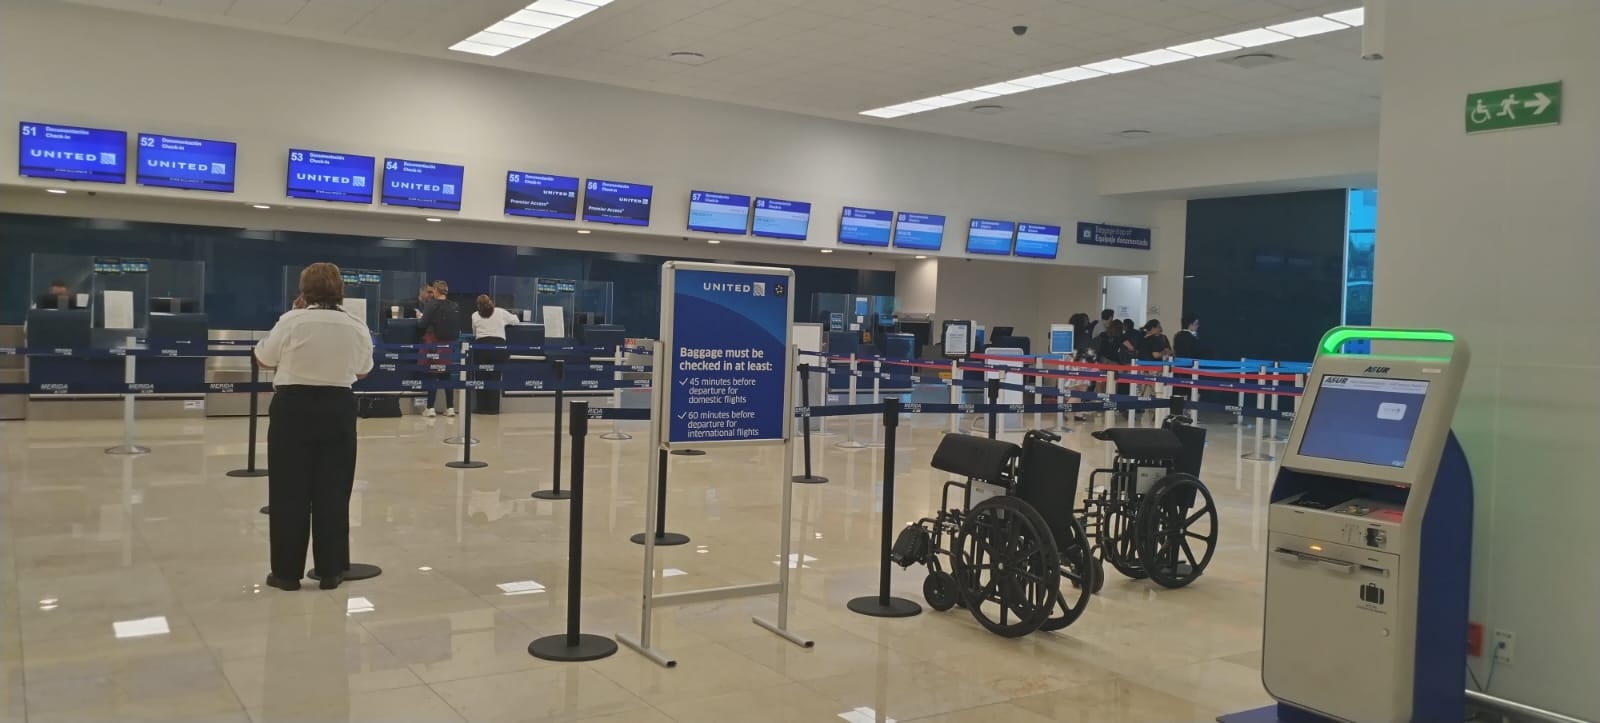 El vuelo de United es el único con retrasos por varias horas en el aeropuerto de Mérida